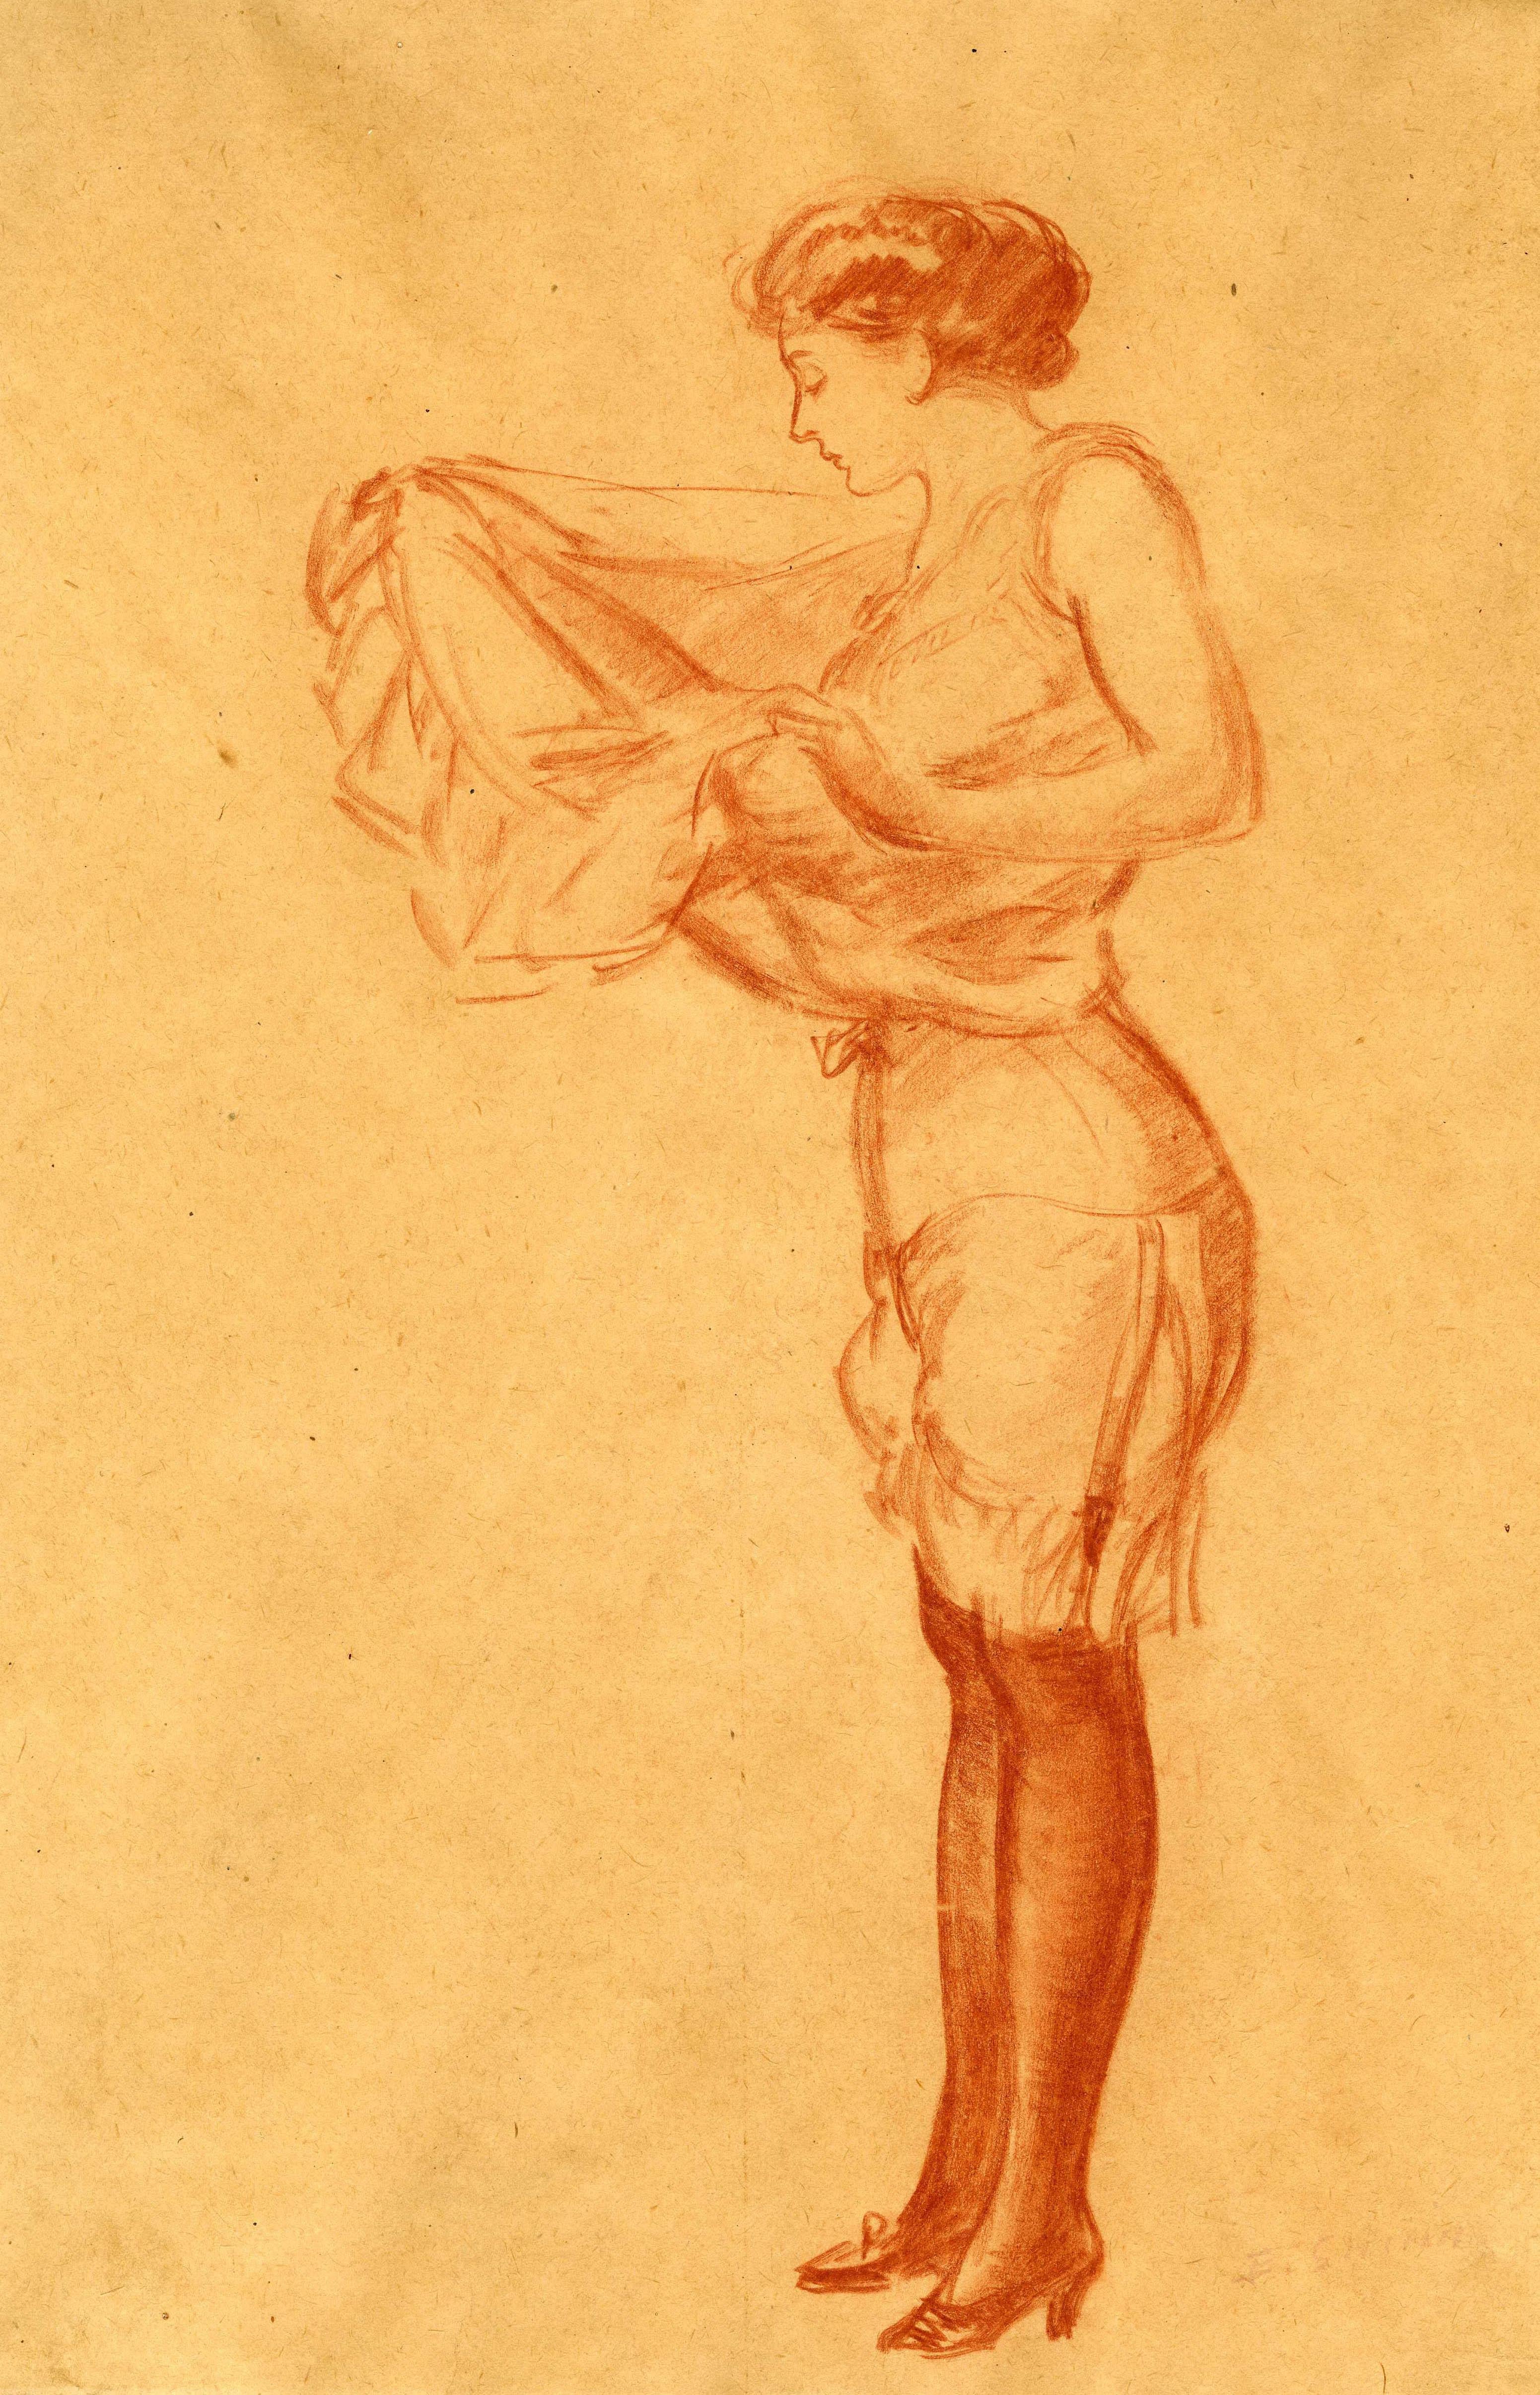 Femme tirant sur une corde
Conte sur papier, c. 1910
Signé en bas à droite : 